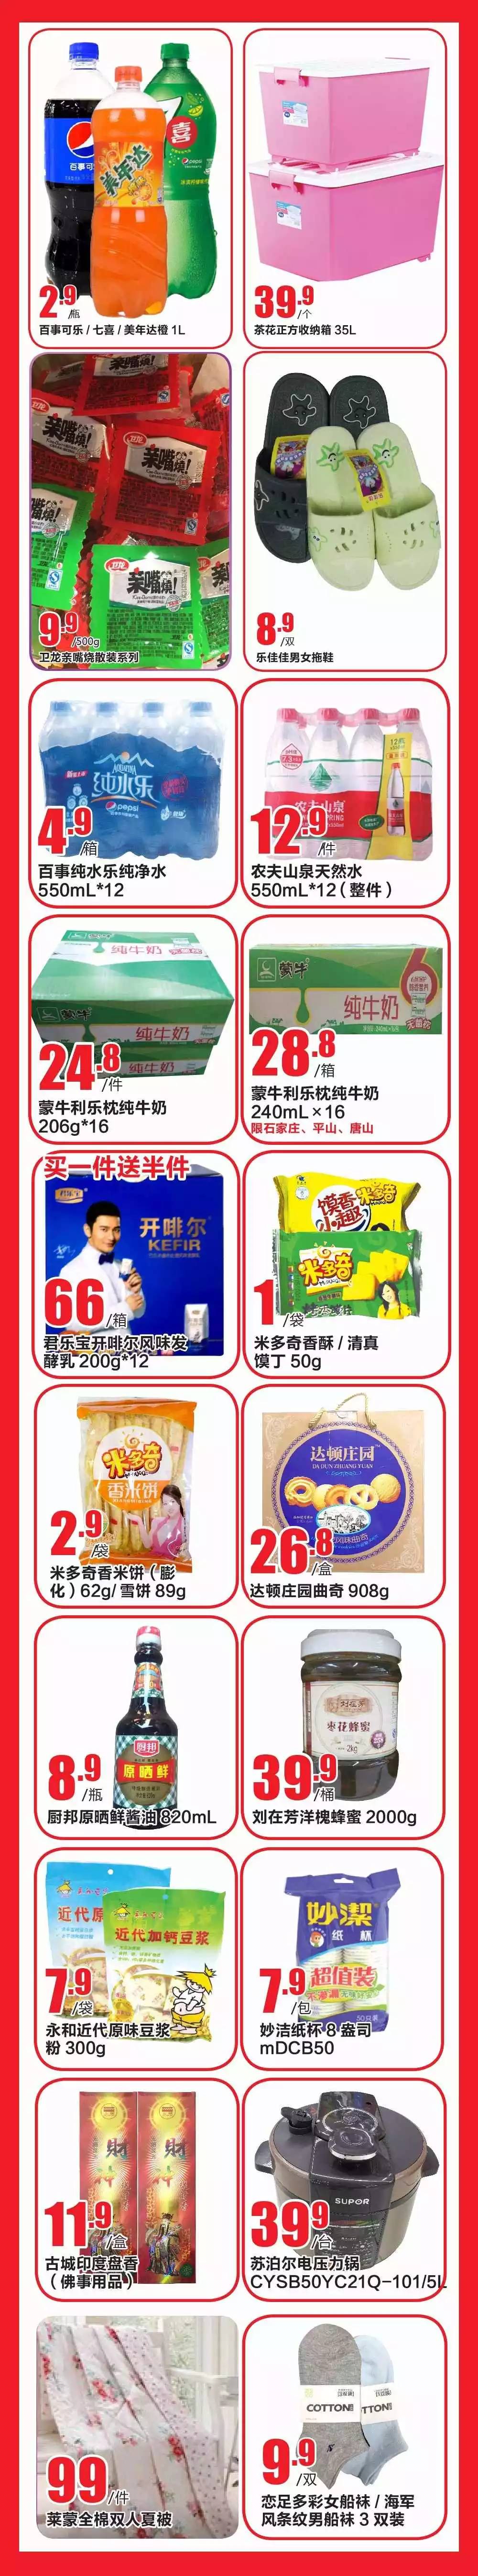 永辉超市丨低价风暴超级钜惠